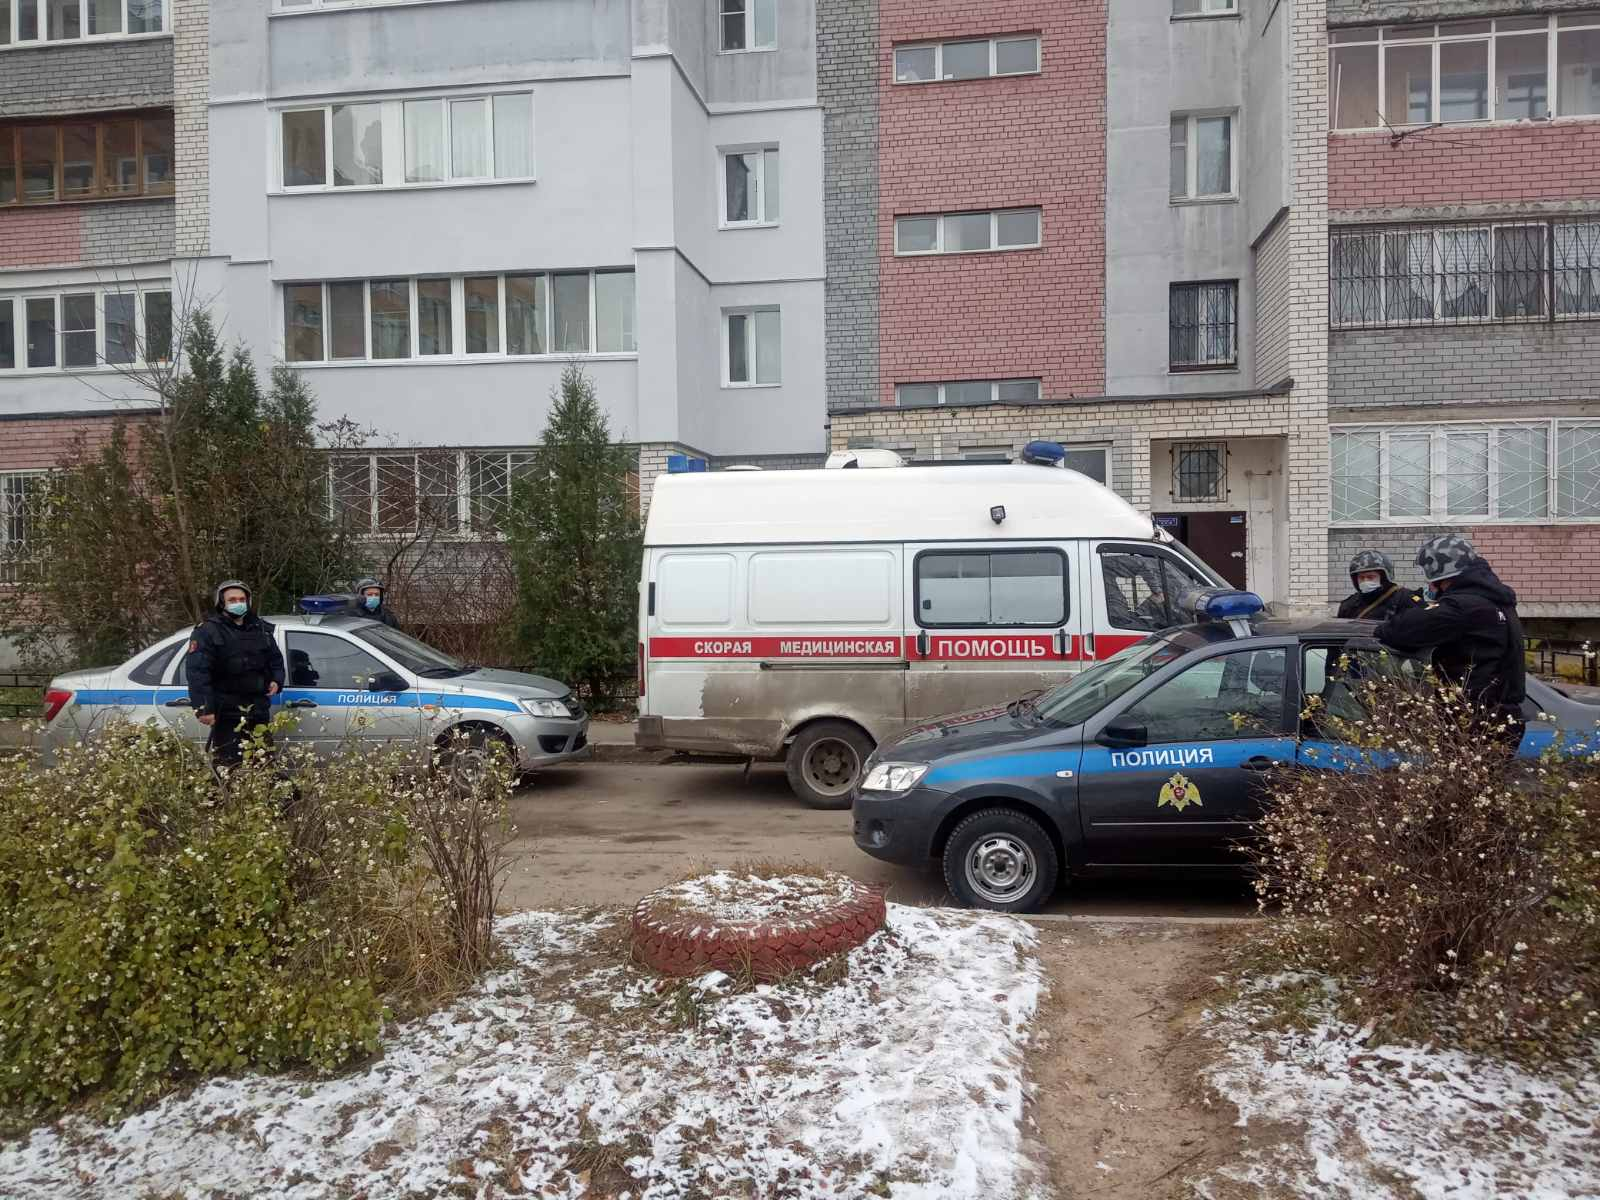 Мужчина с пистолетом напал на врачей скорой в Нижнем Новгороде